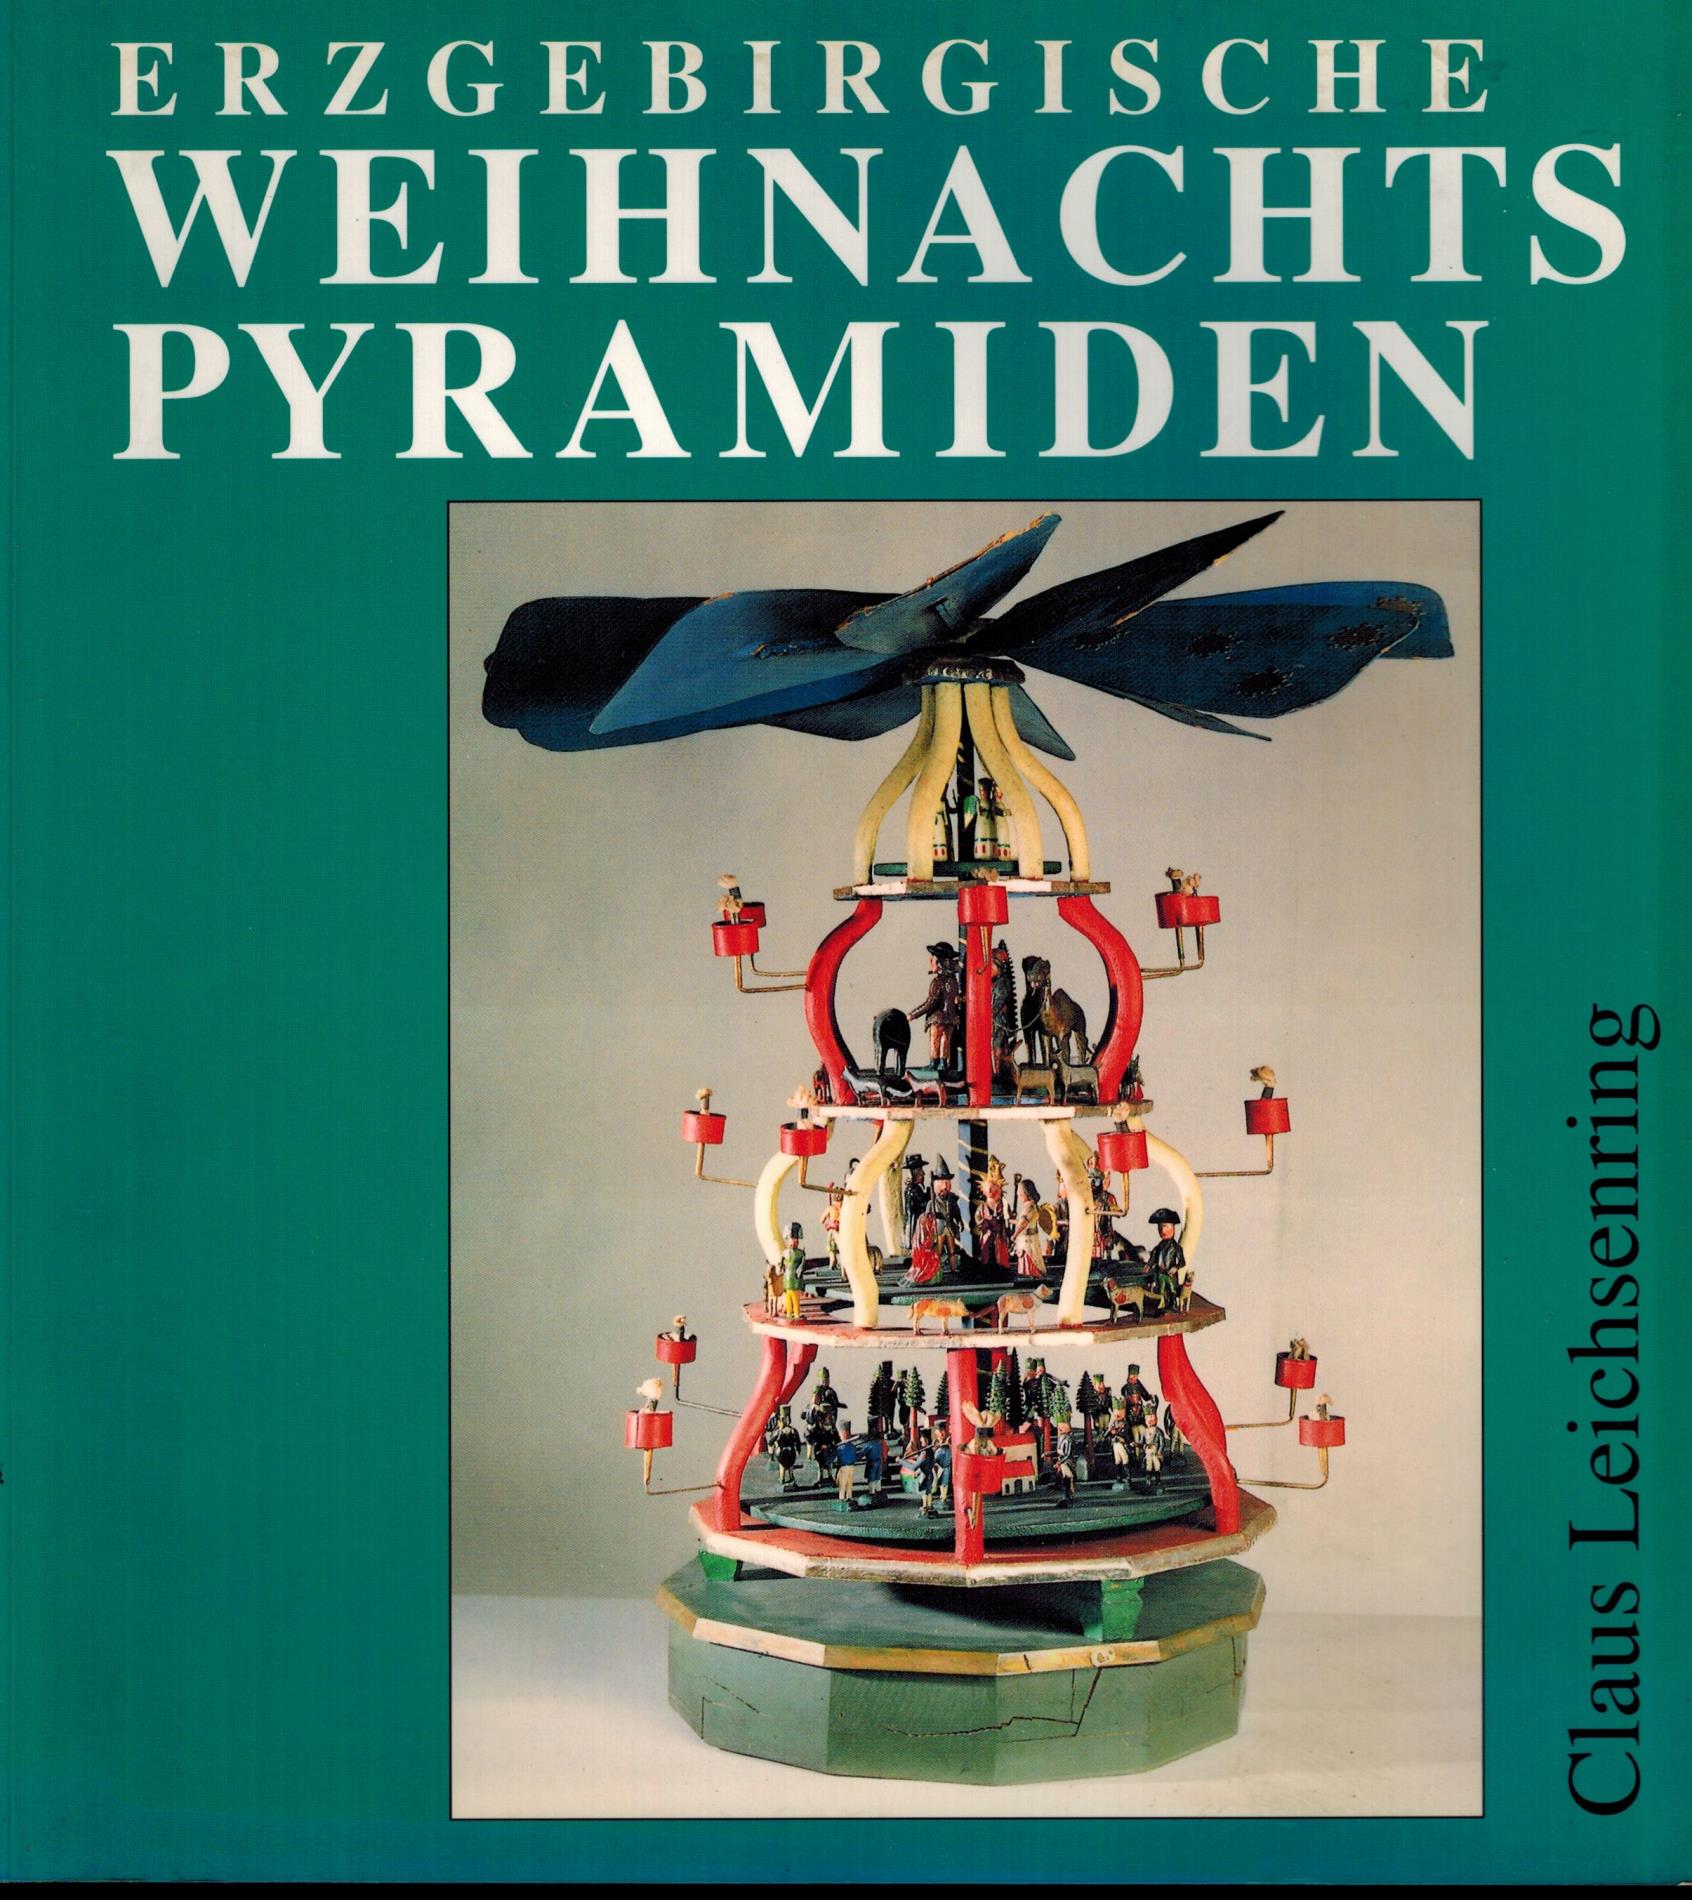 Erzgebirgische Weihnachtspyramiden, Entwicklung, Herstellung und Gestaltung - Claus Leichsenring